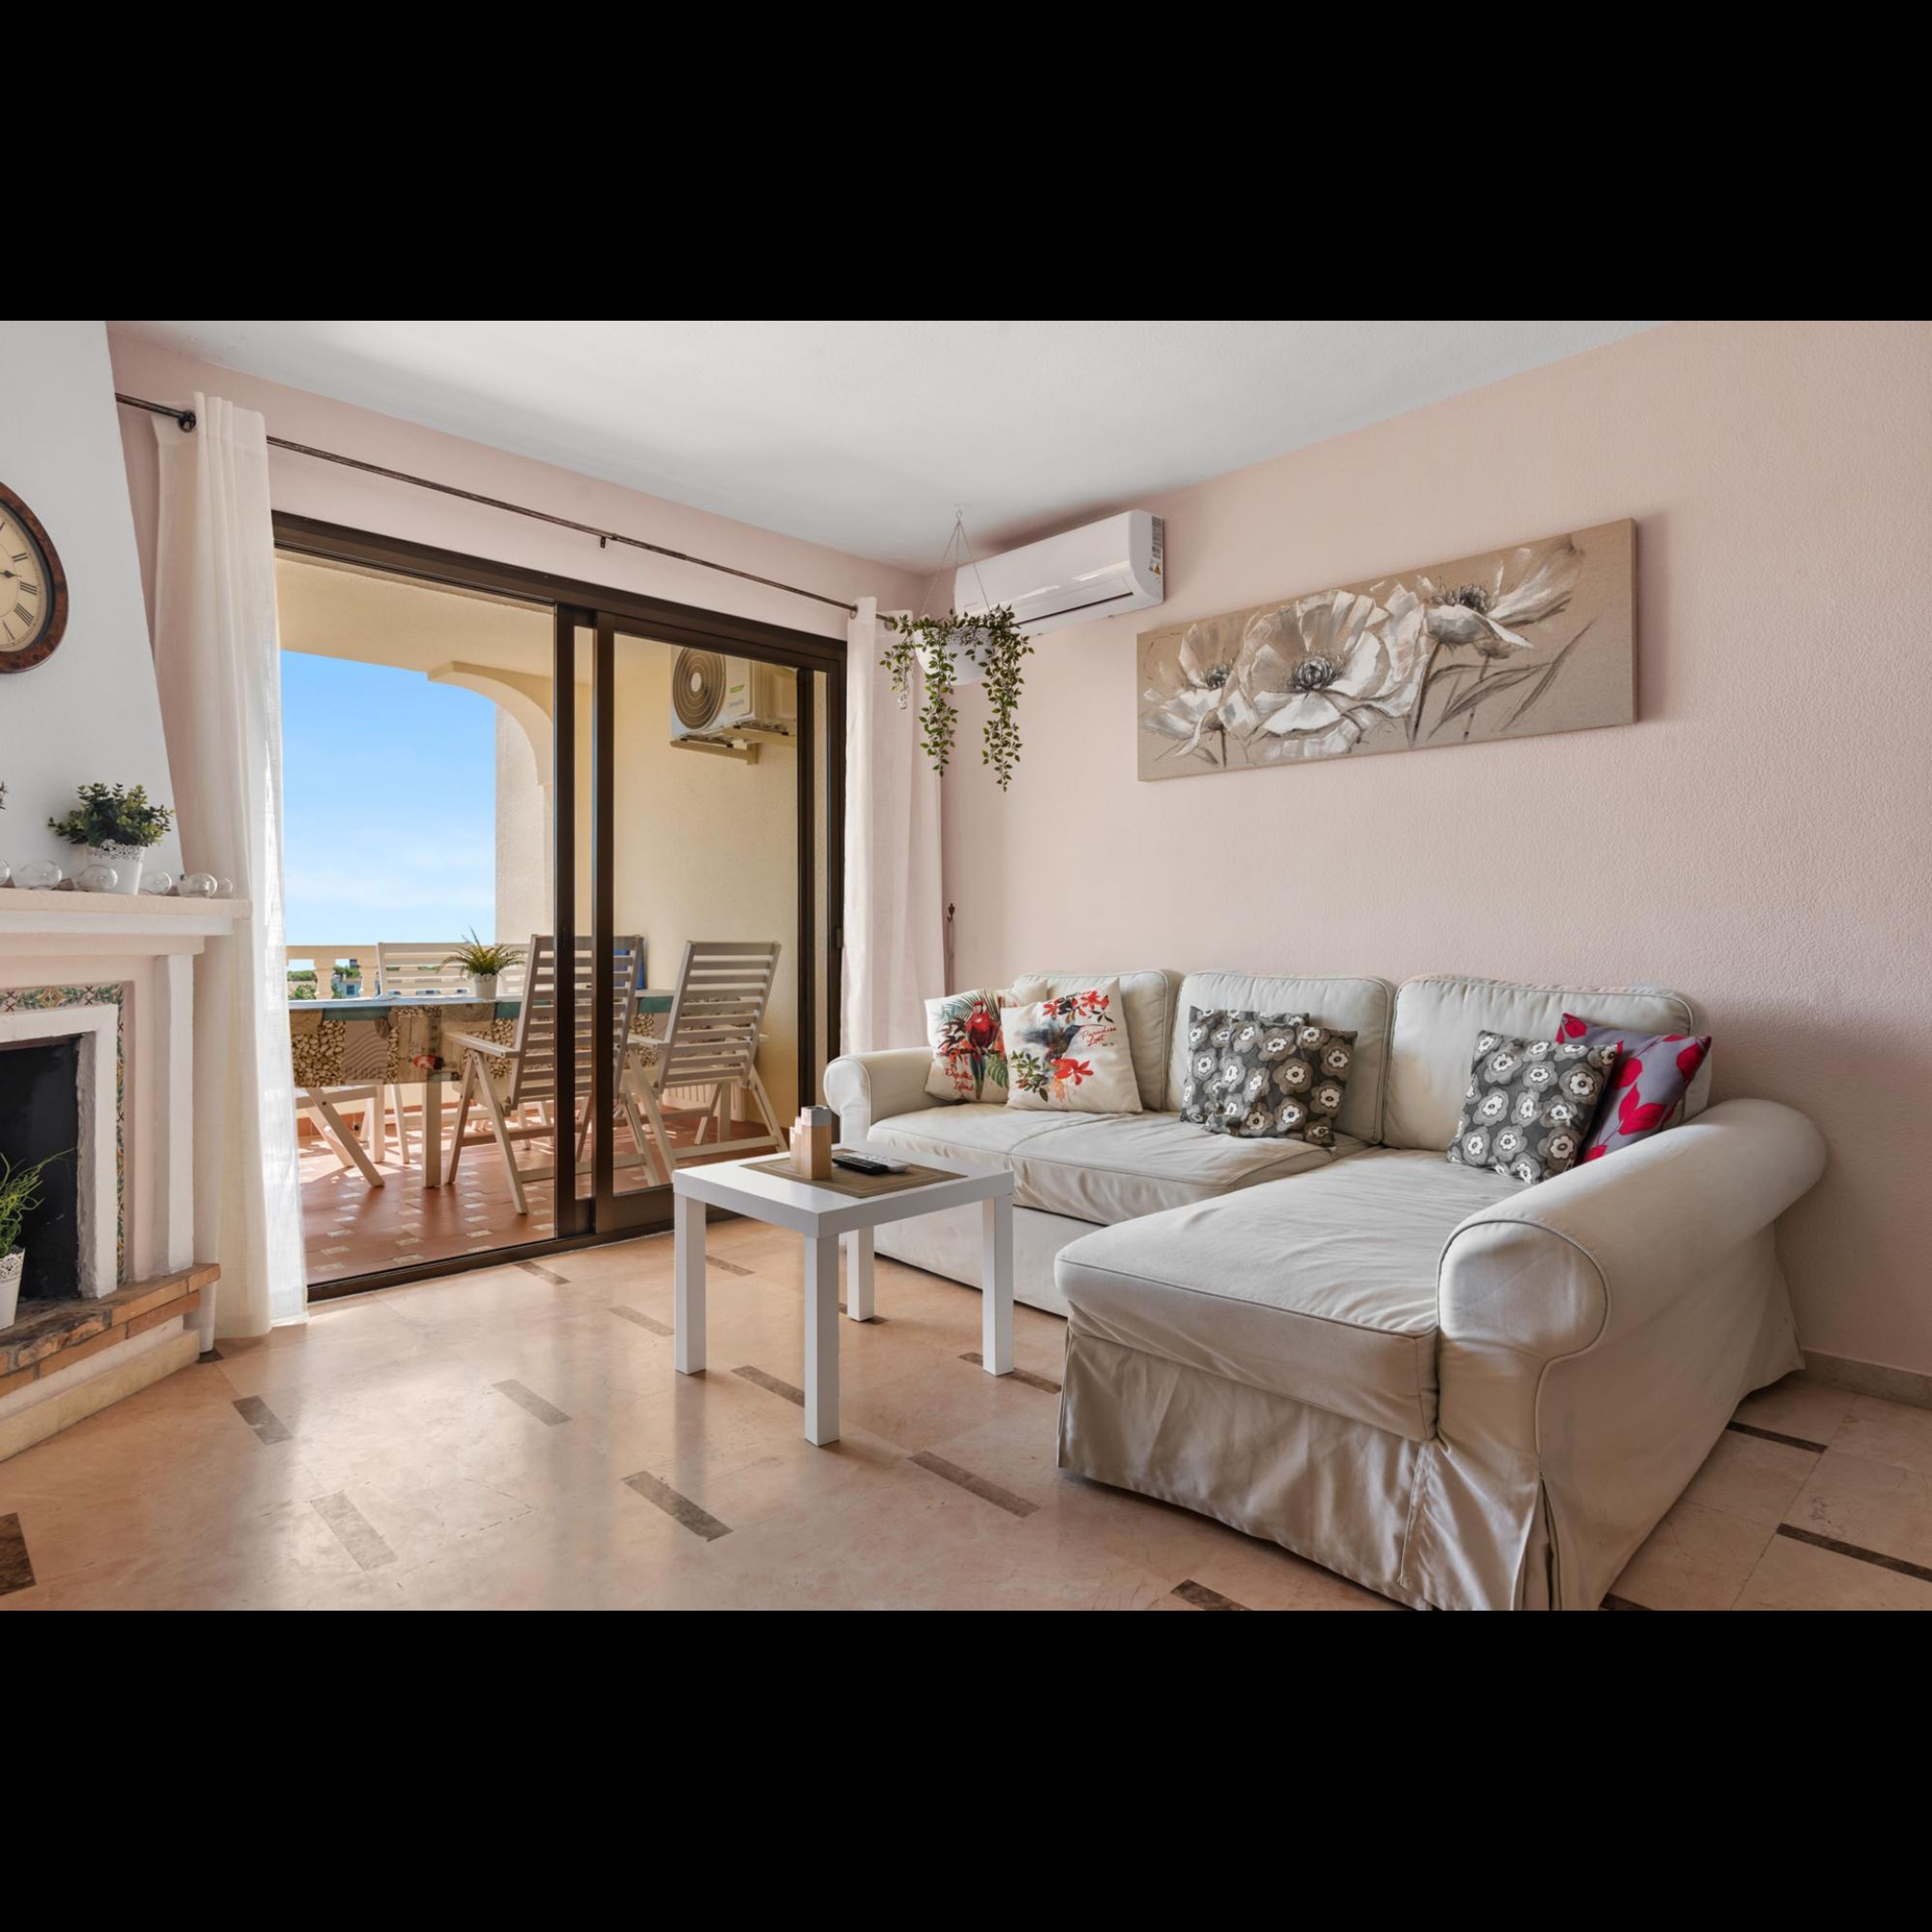 Property Image 1 - Zeus cozy apartment in Riviera del Sol - Ref 221